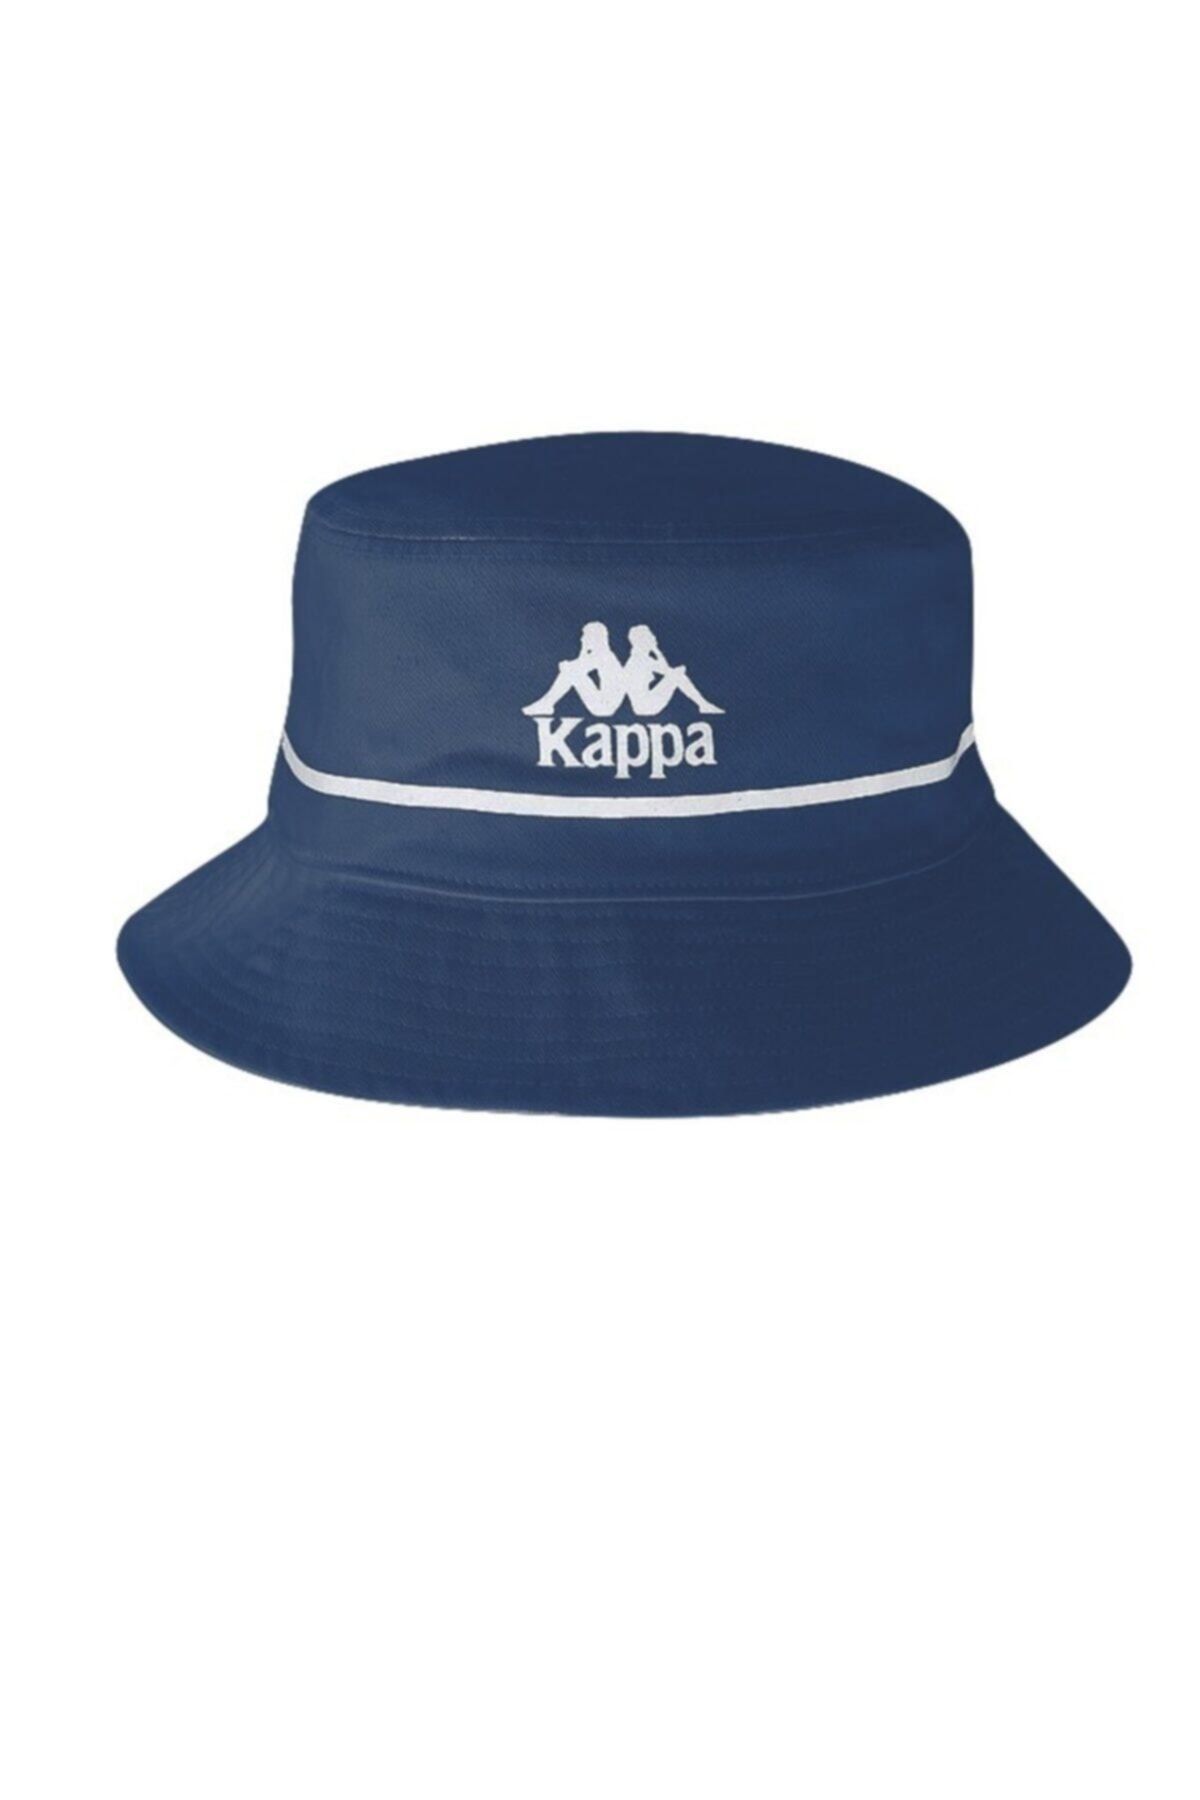 Kappa Kadın Safari Şapka Bucketo A.indigo